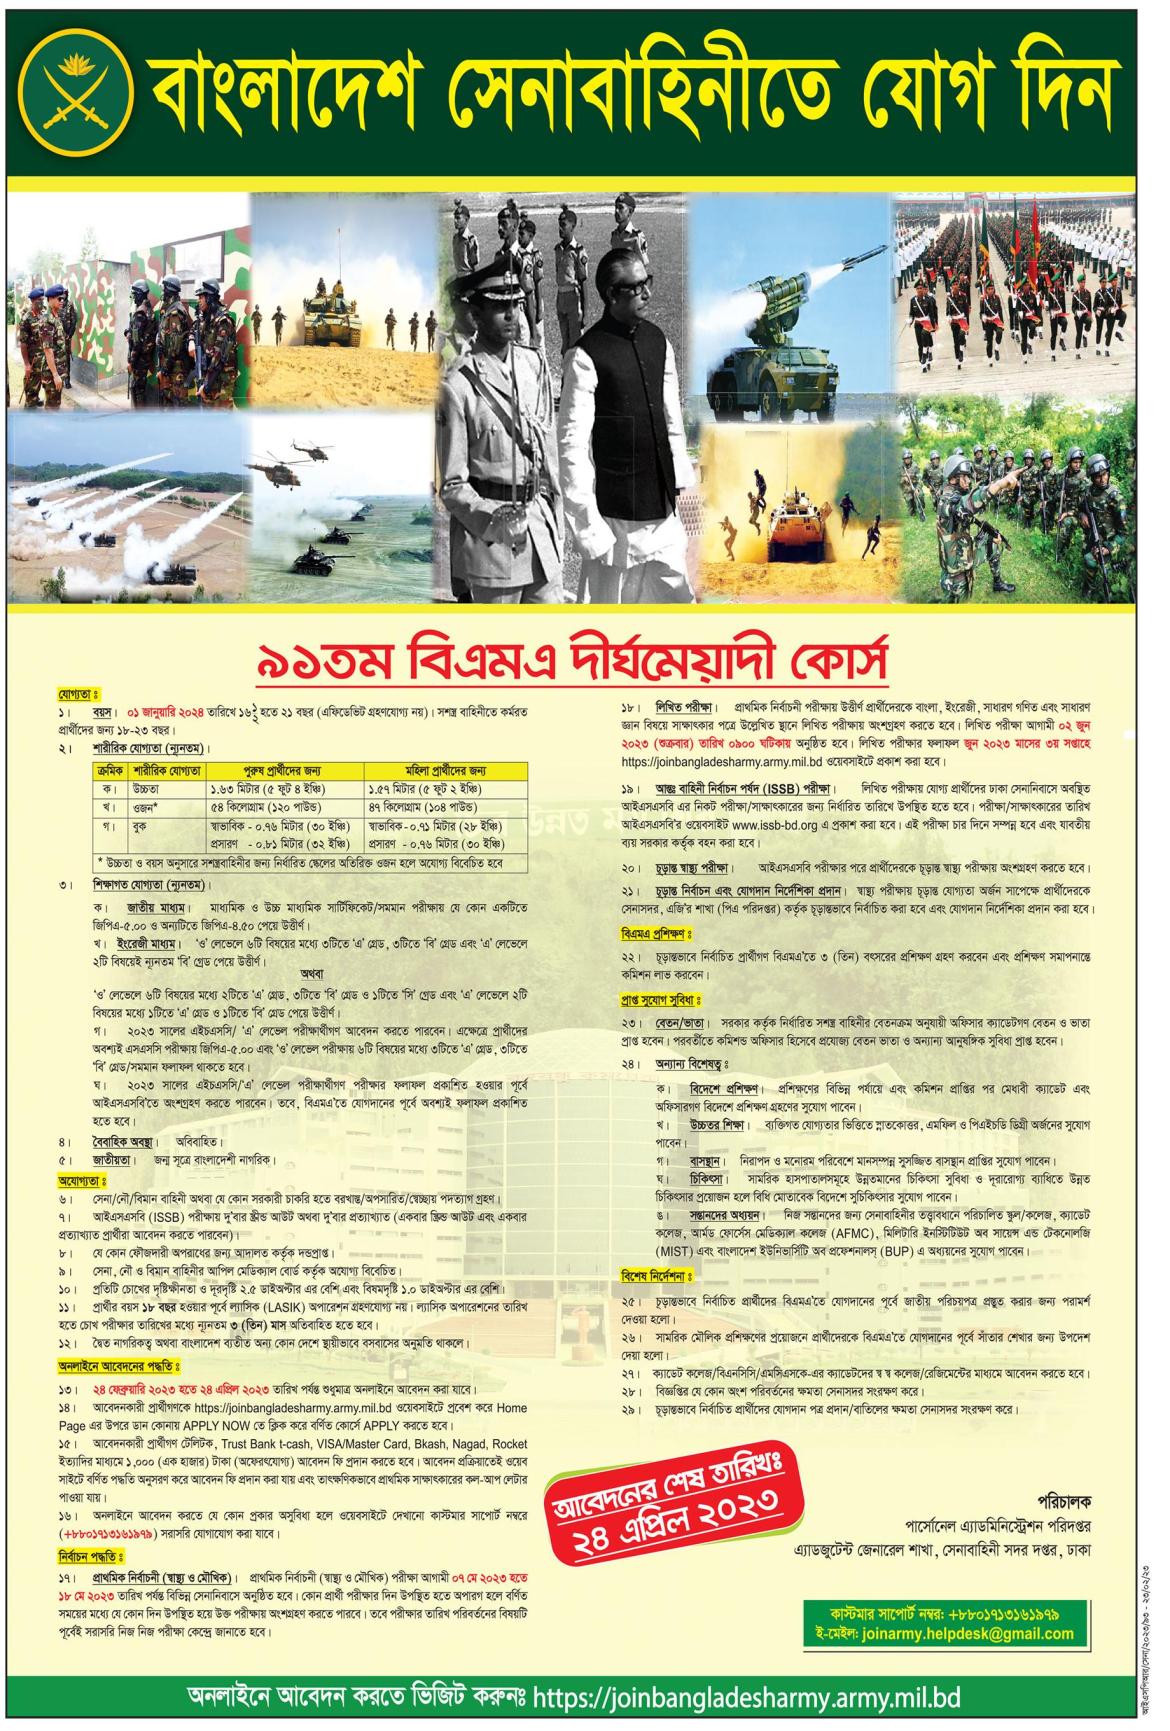 বাংলাদেশ সেনাবাহিনী ৯১ তম বিএমএ লং কোর্সে কমিশন্ড অফিসার পদে চাকরির সুযোগ - Bangladesh army job circular 2023 91st BMA long course https://joinbangladesharmy.army.mil.bd